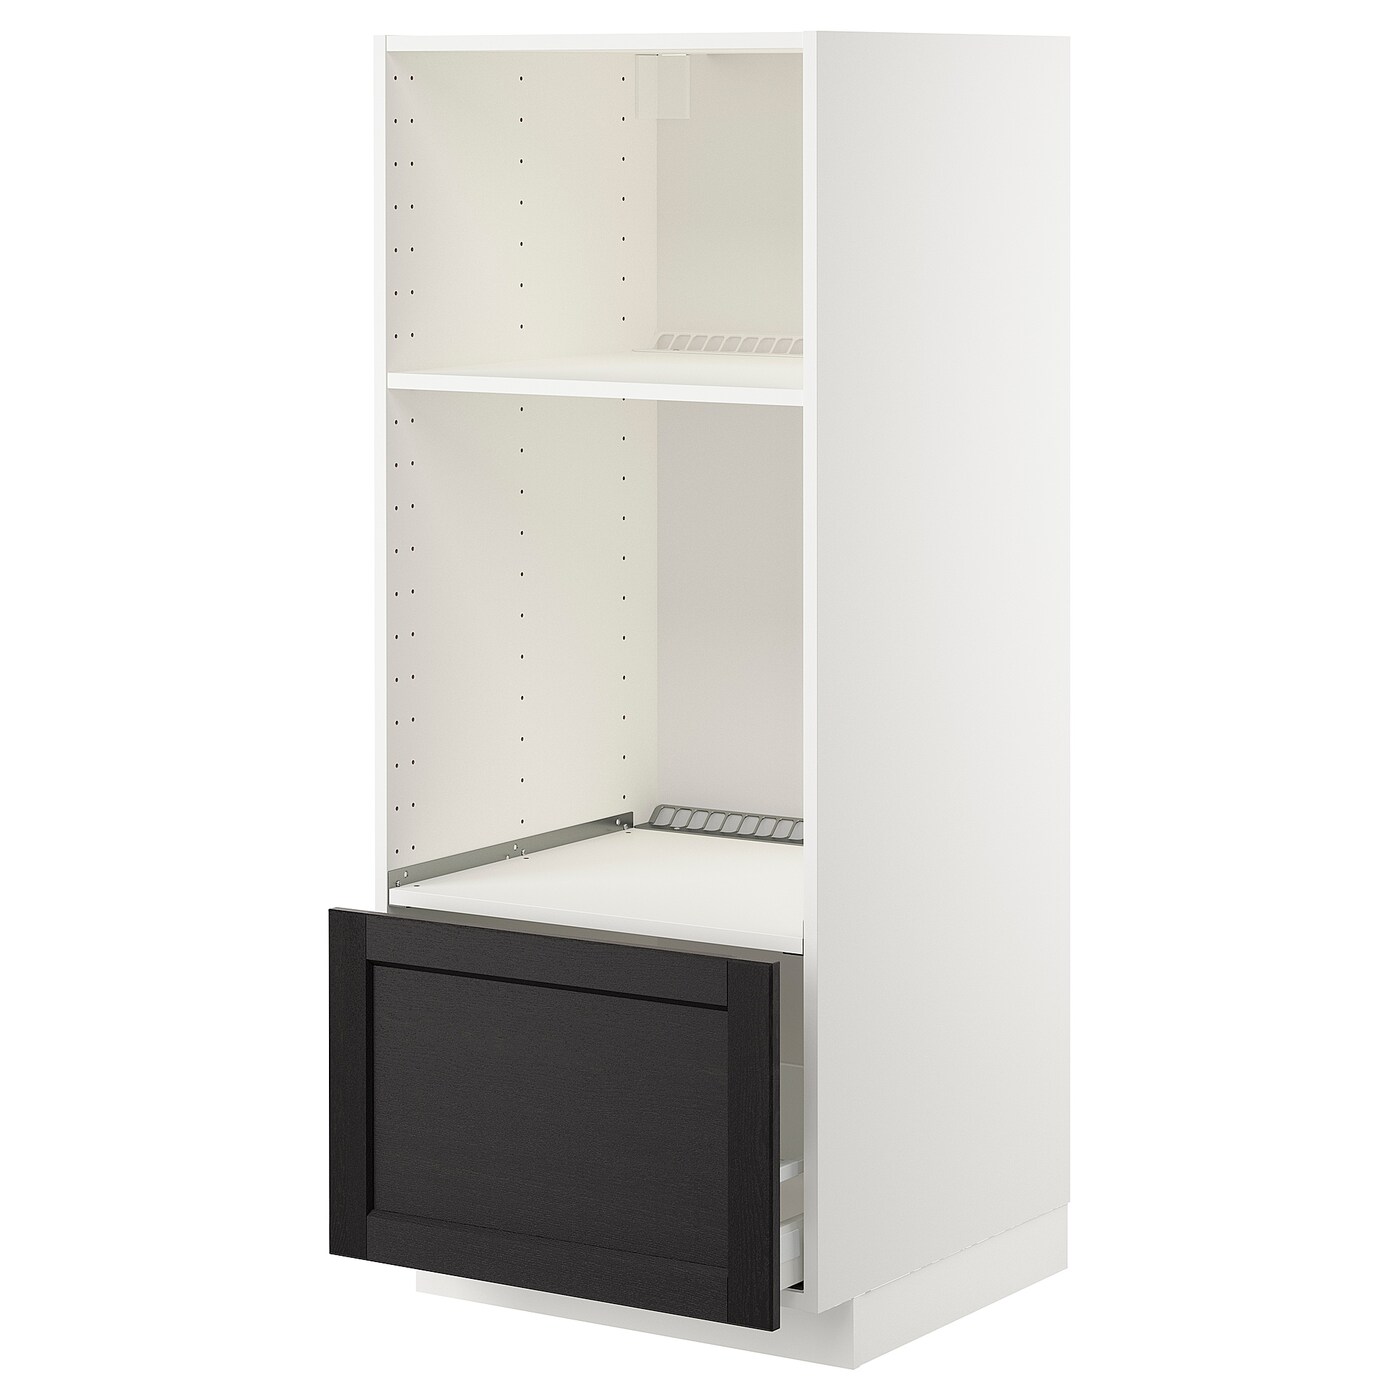 Напольный шкаф - IKEA METOD MAXIMERA, 60x62x148см, черный/белый, МЕТОД МАКСИМЕРА ИКЕА